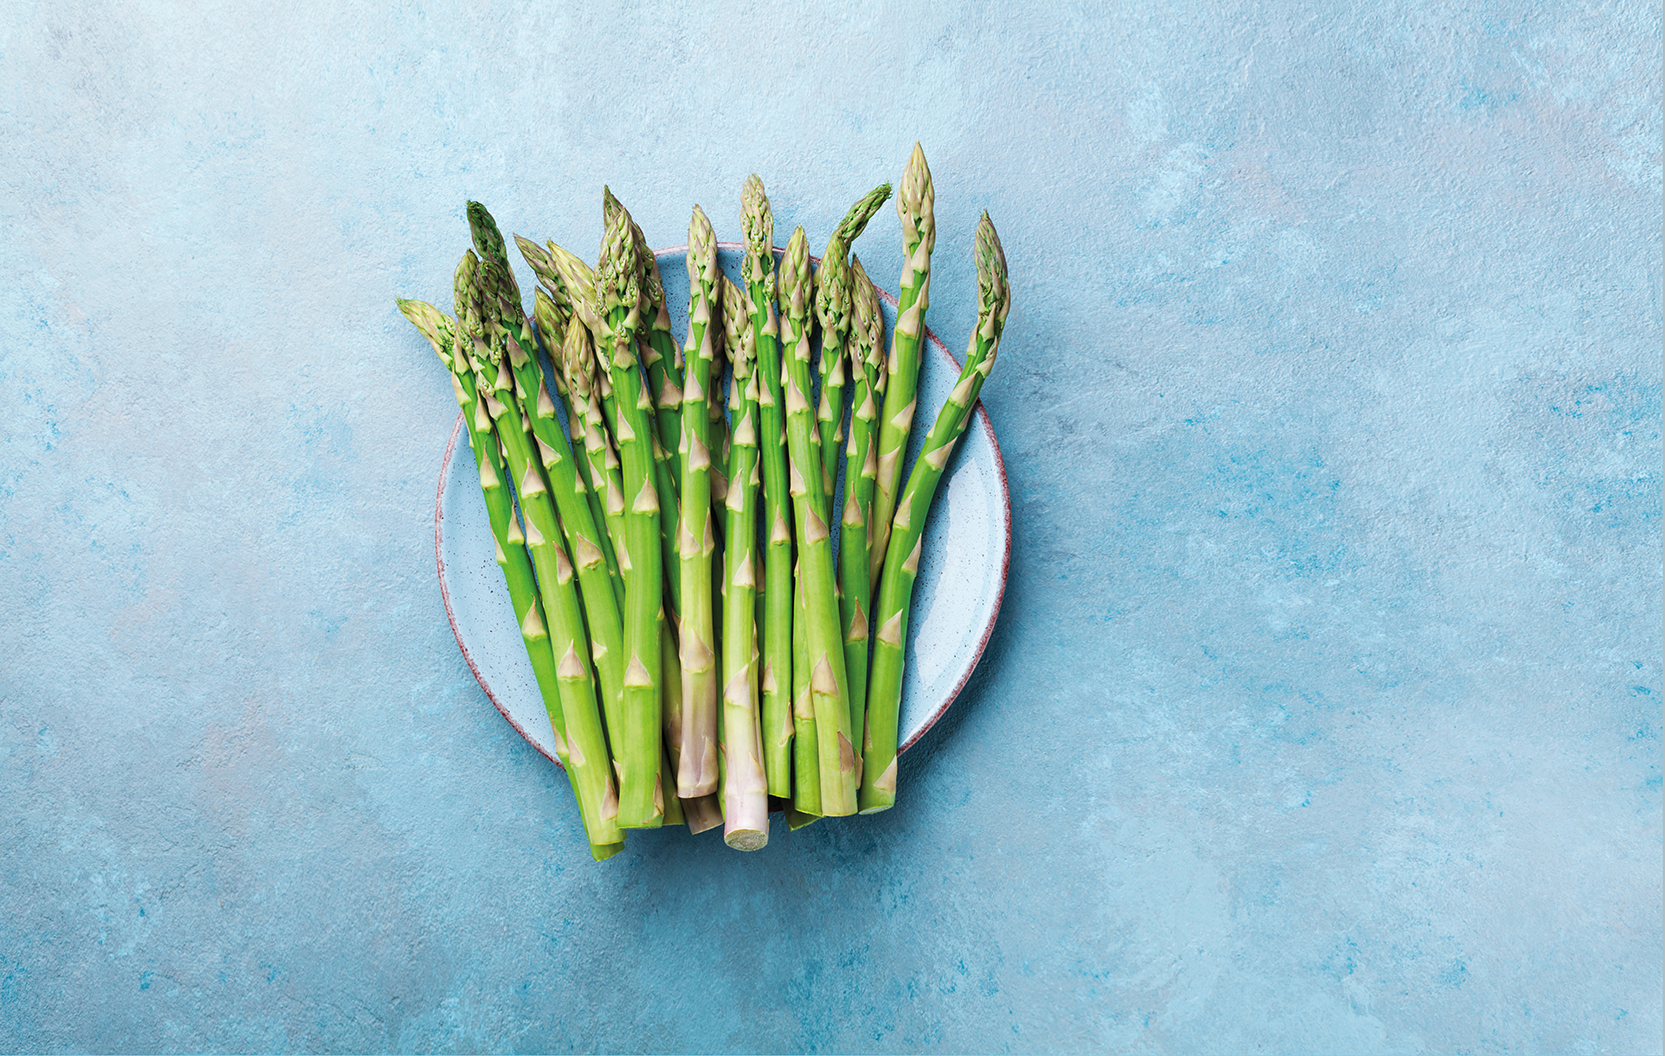 Fresh green asparagus in a blue bowl, top view.